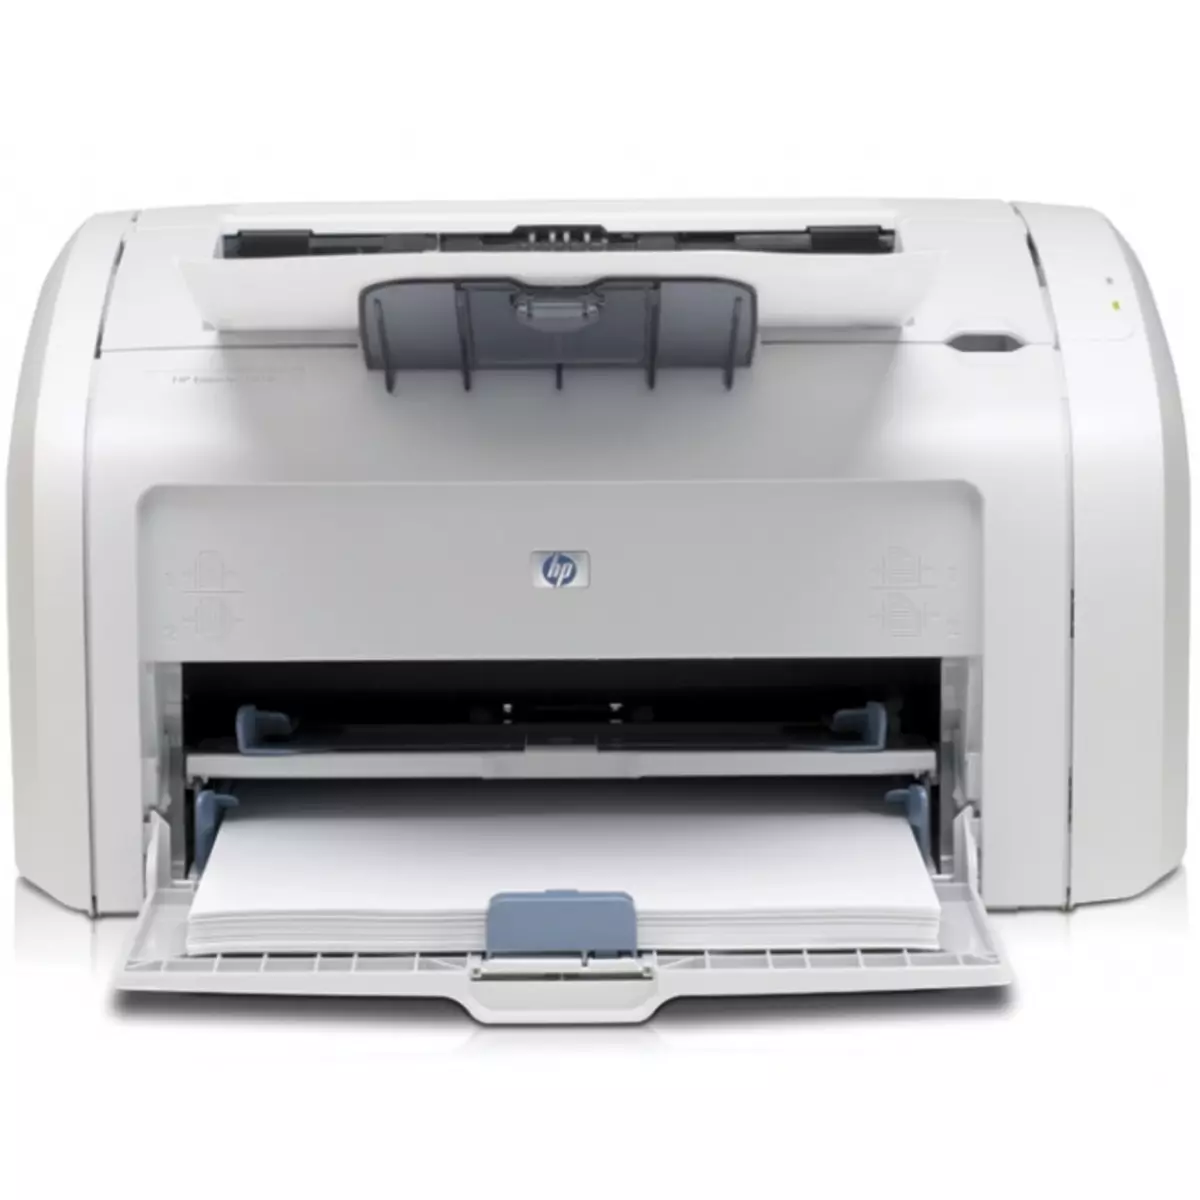 Namestitev tiskalnika HP LaserJet 1018